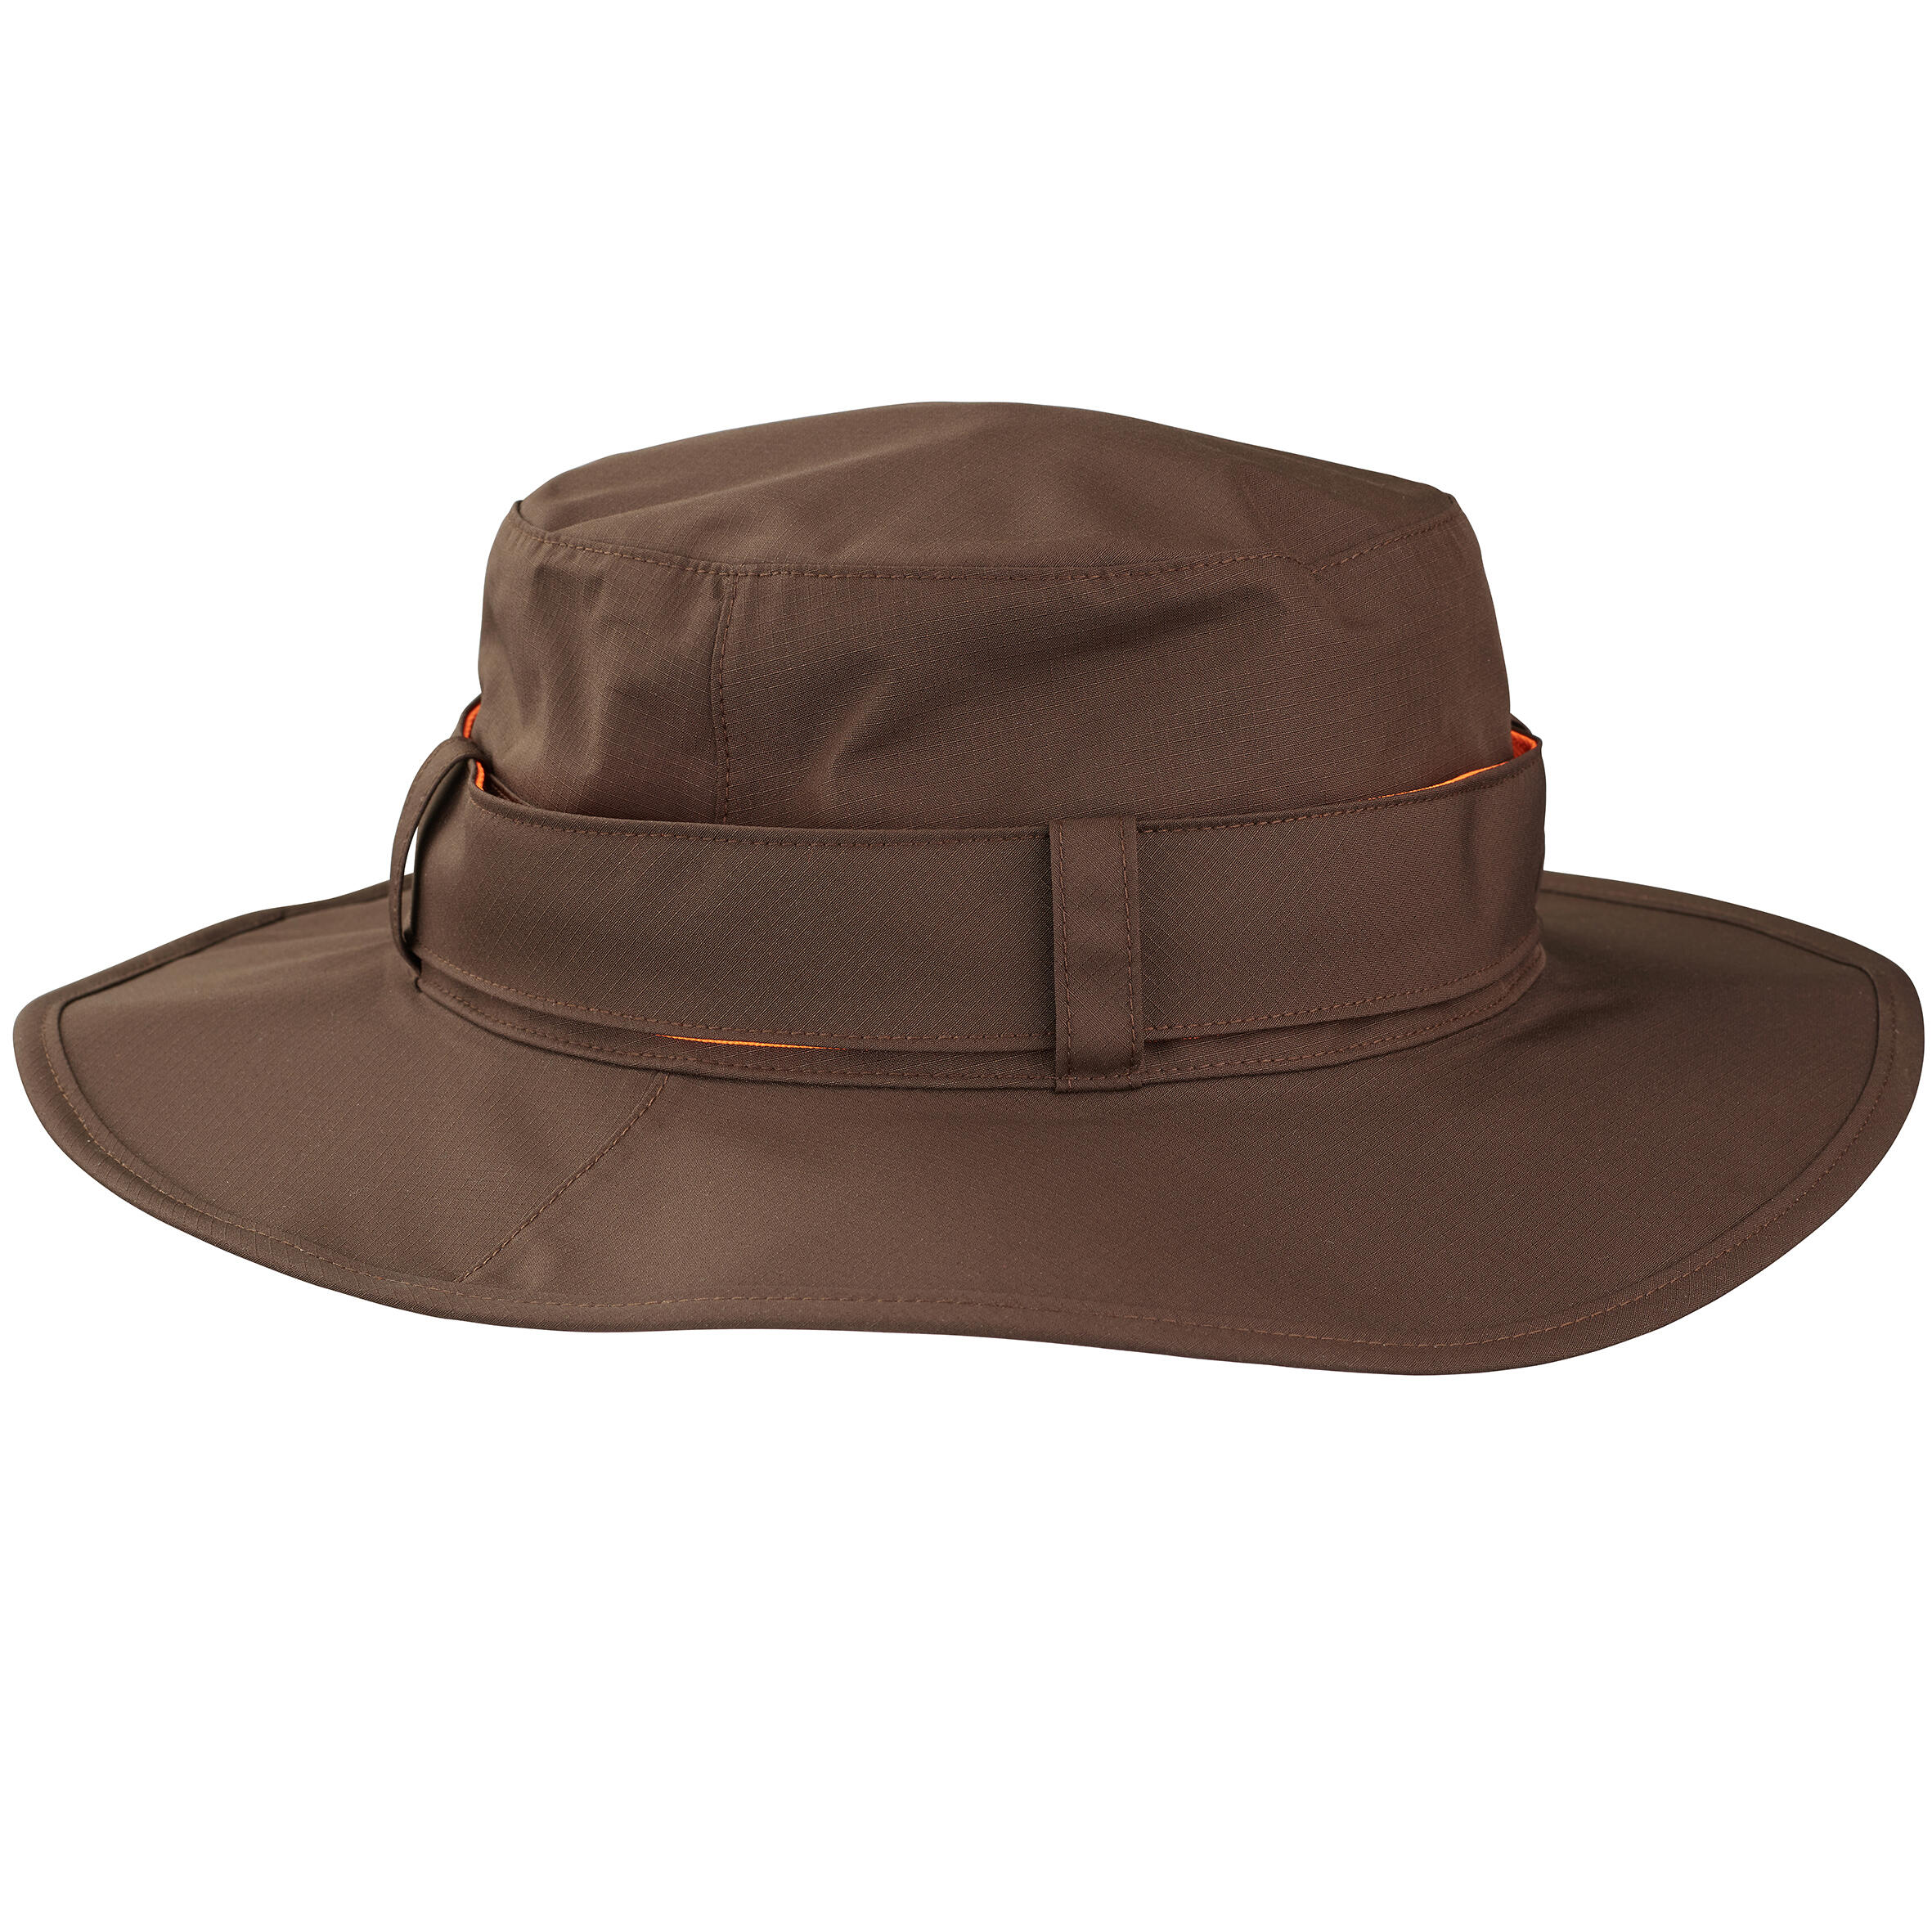 Pălărie 520 impermeabilă și rezistentă Bărbați La Oferta Online decathlon imagine La Oferta Online